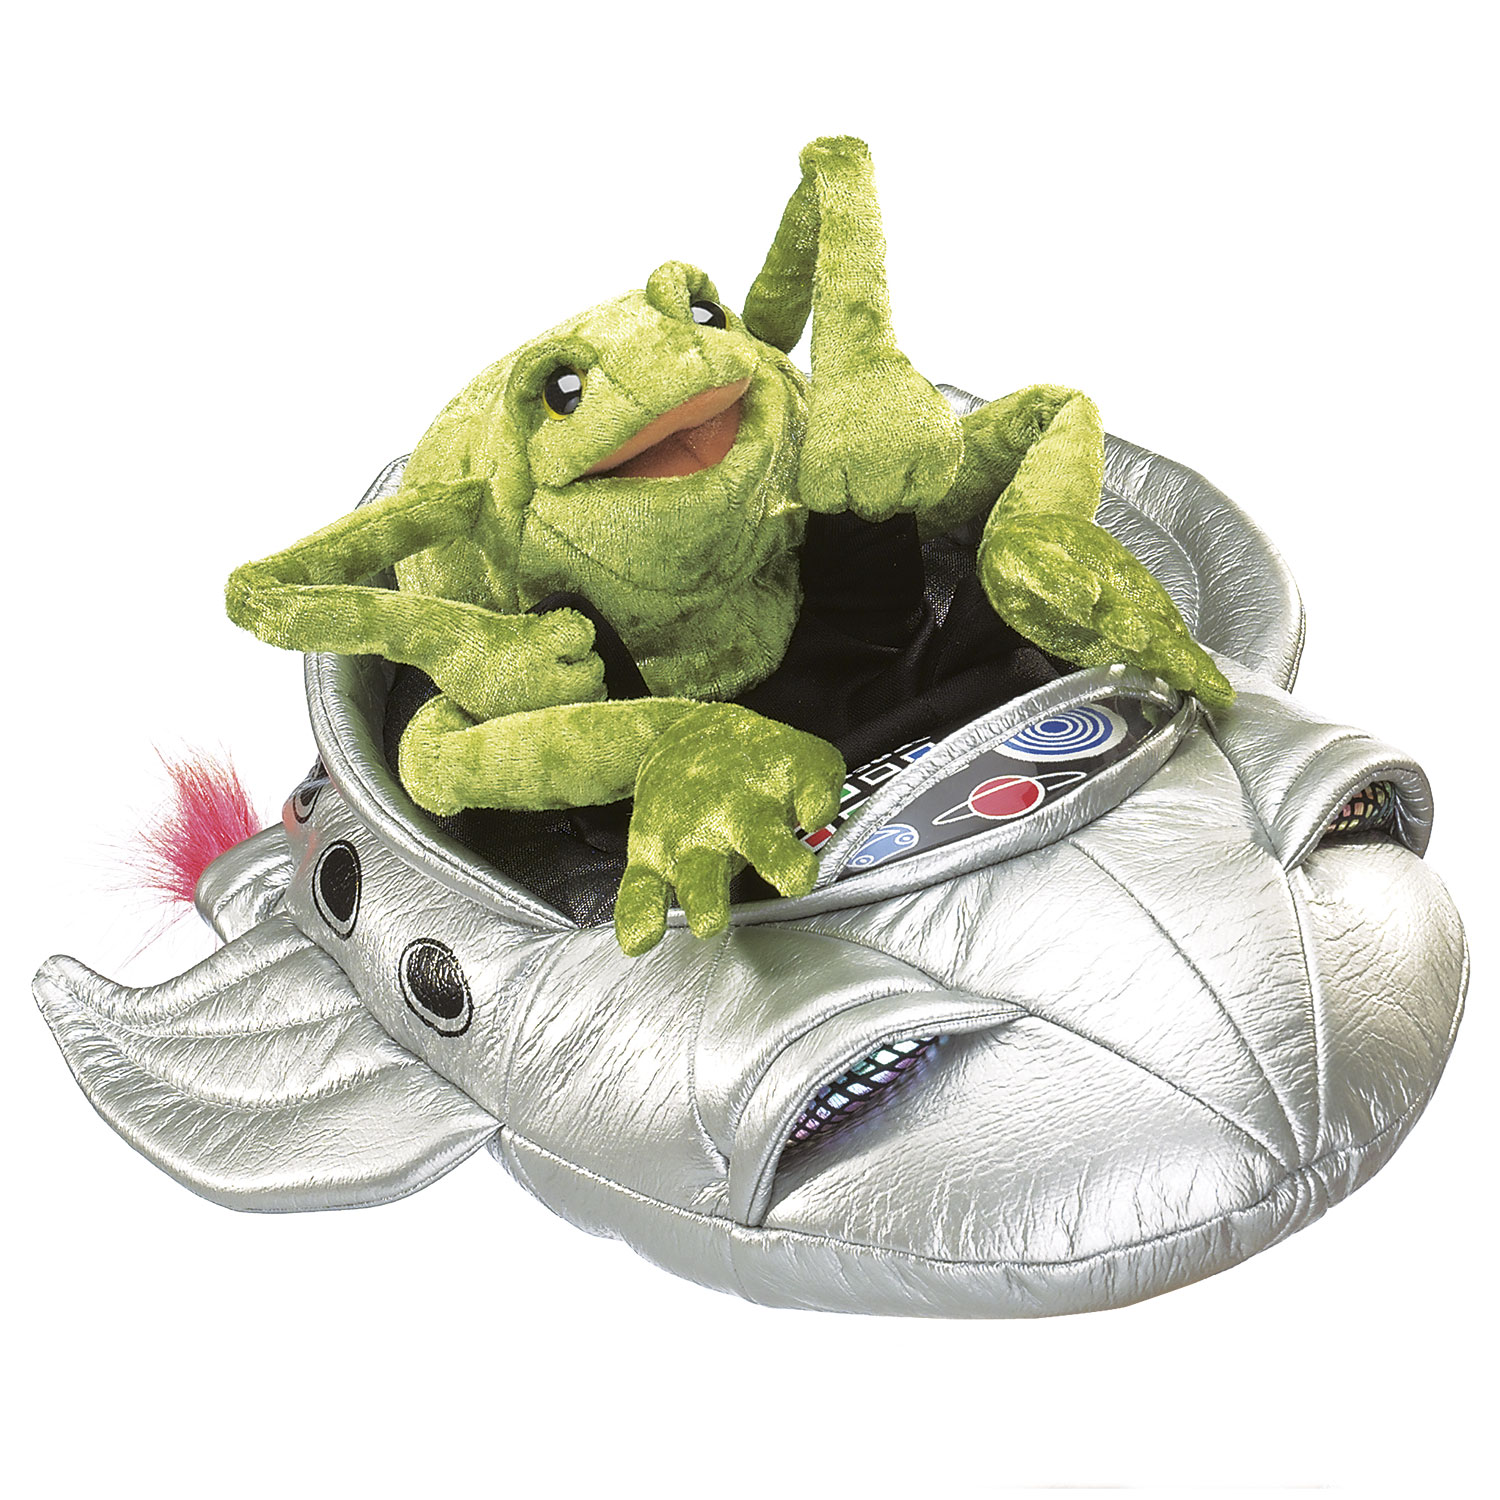 Frosch im Raumschiff / Frog in Spaceship